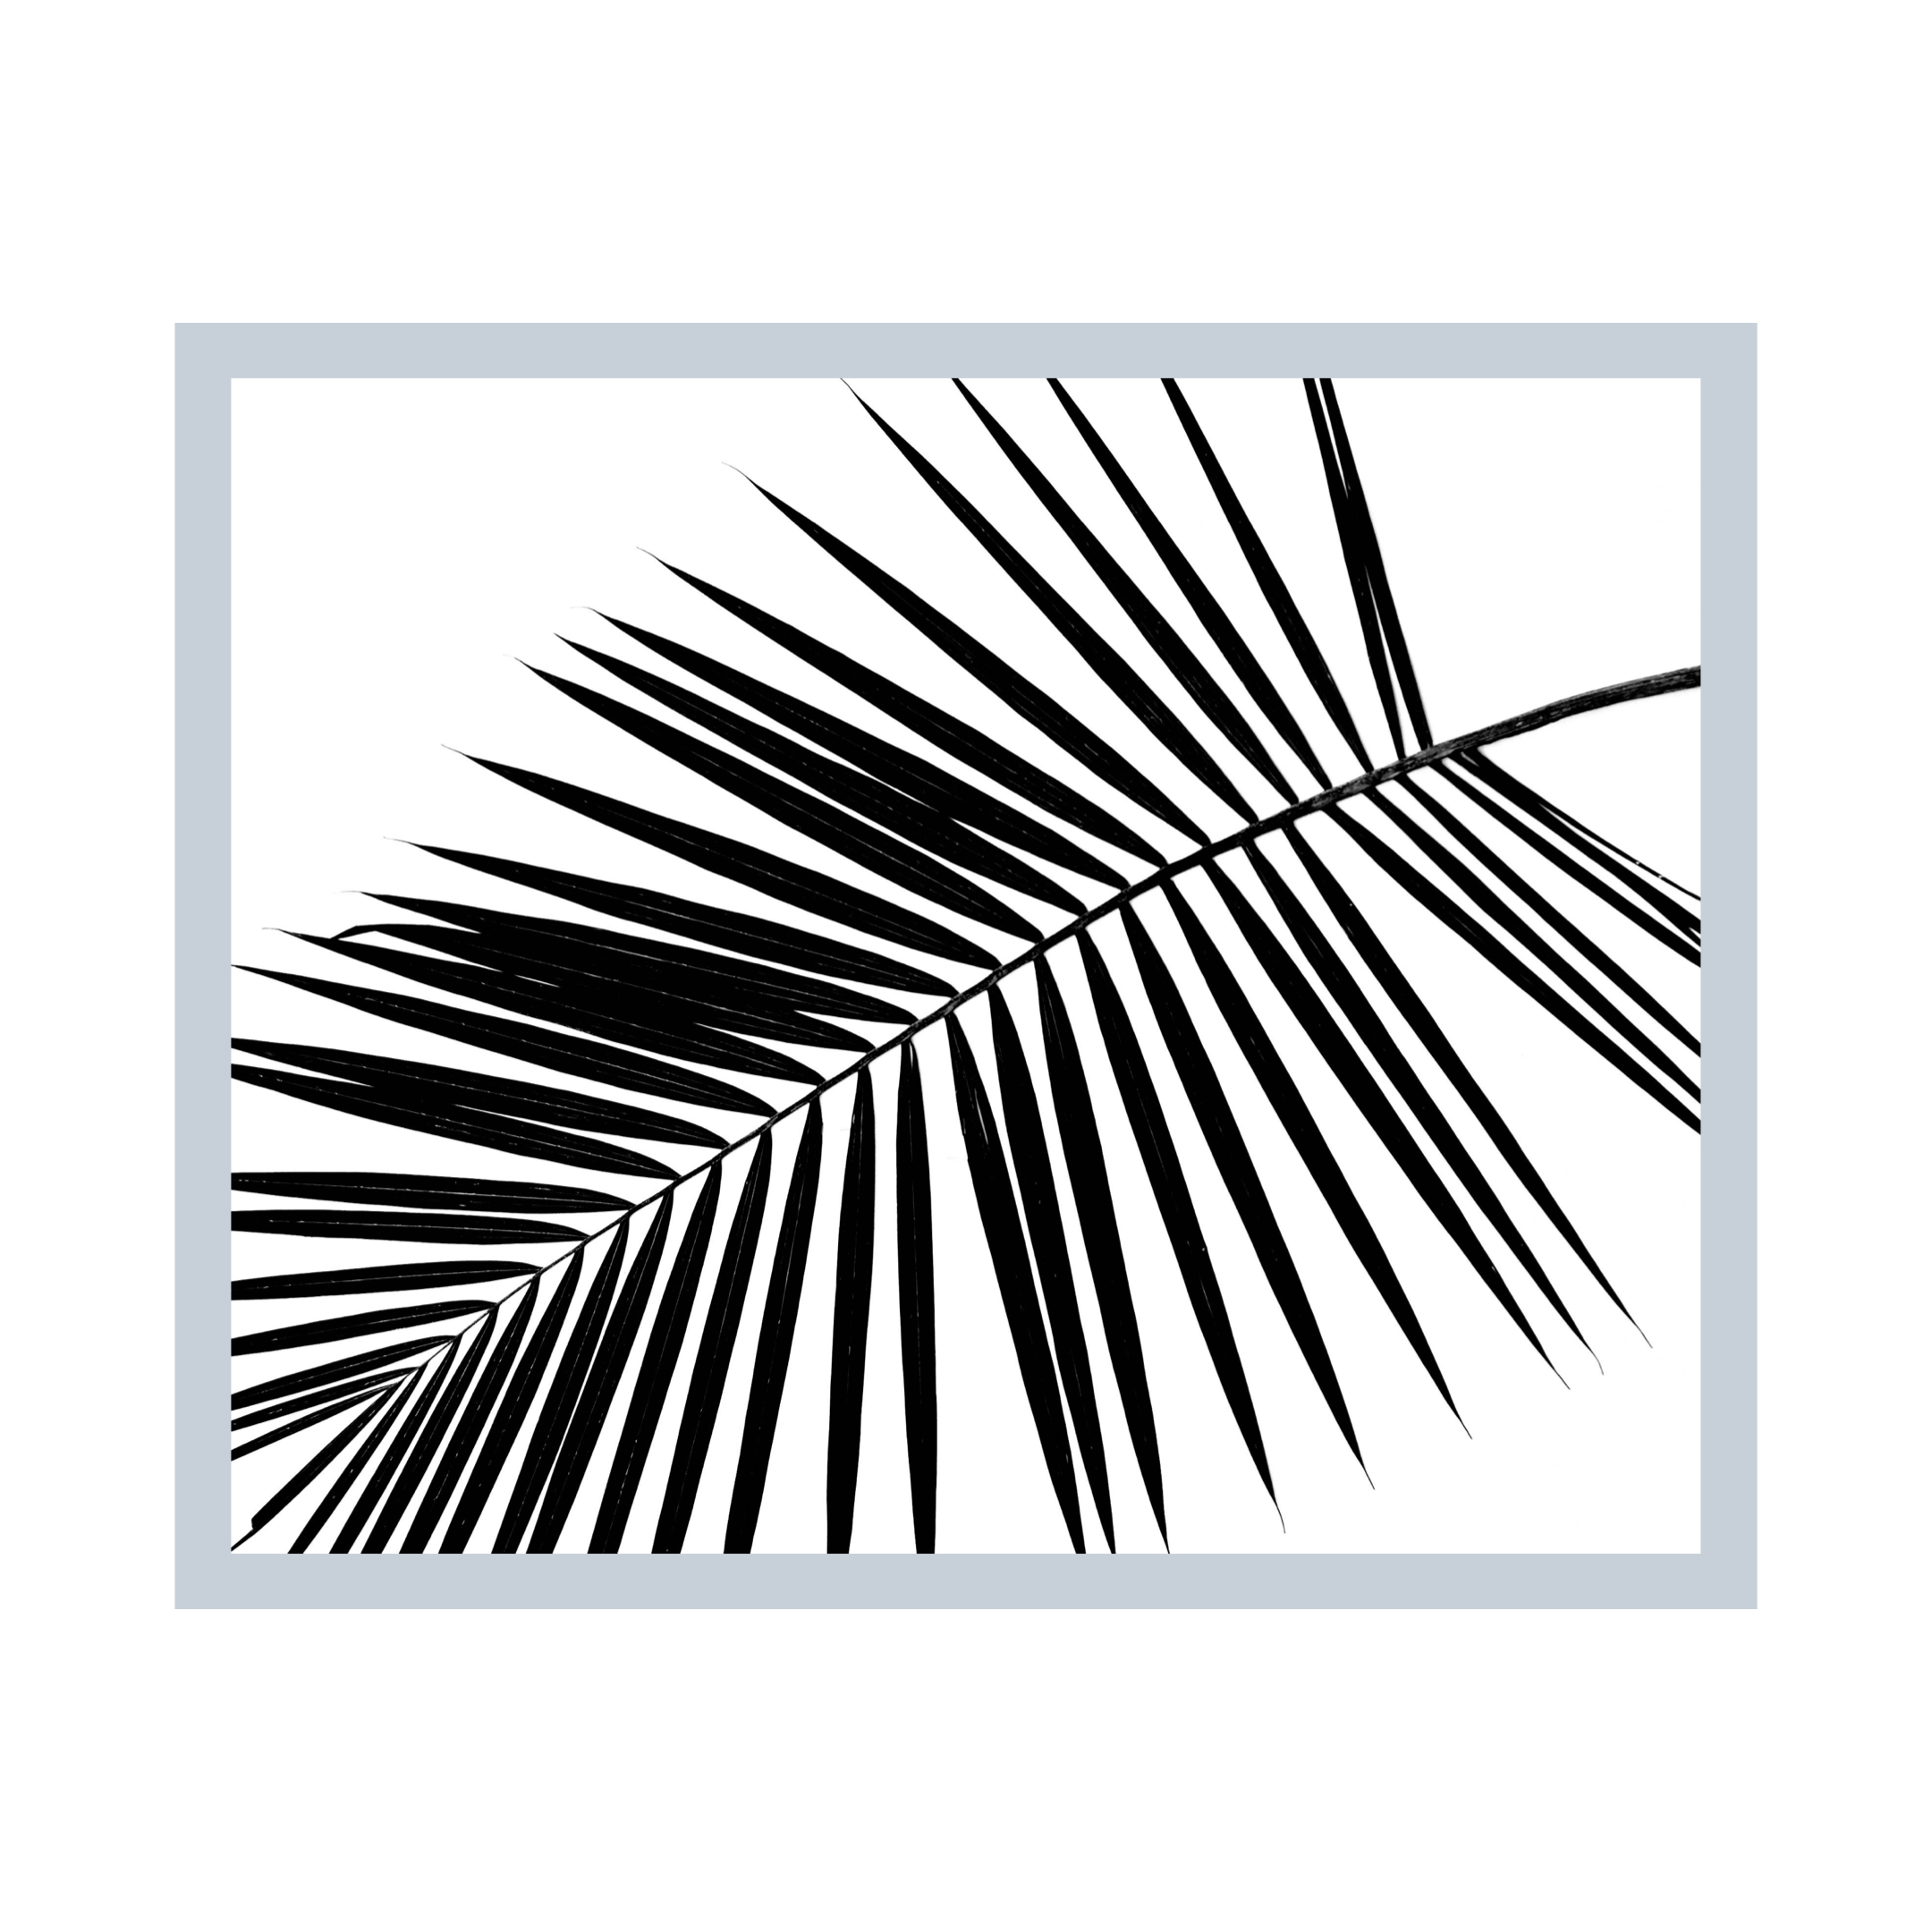 Diagonal Palm Frond